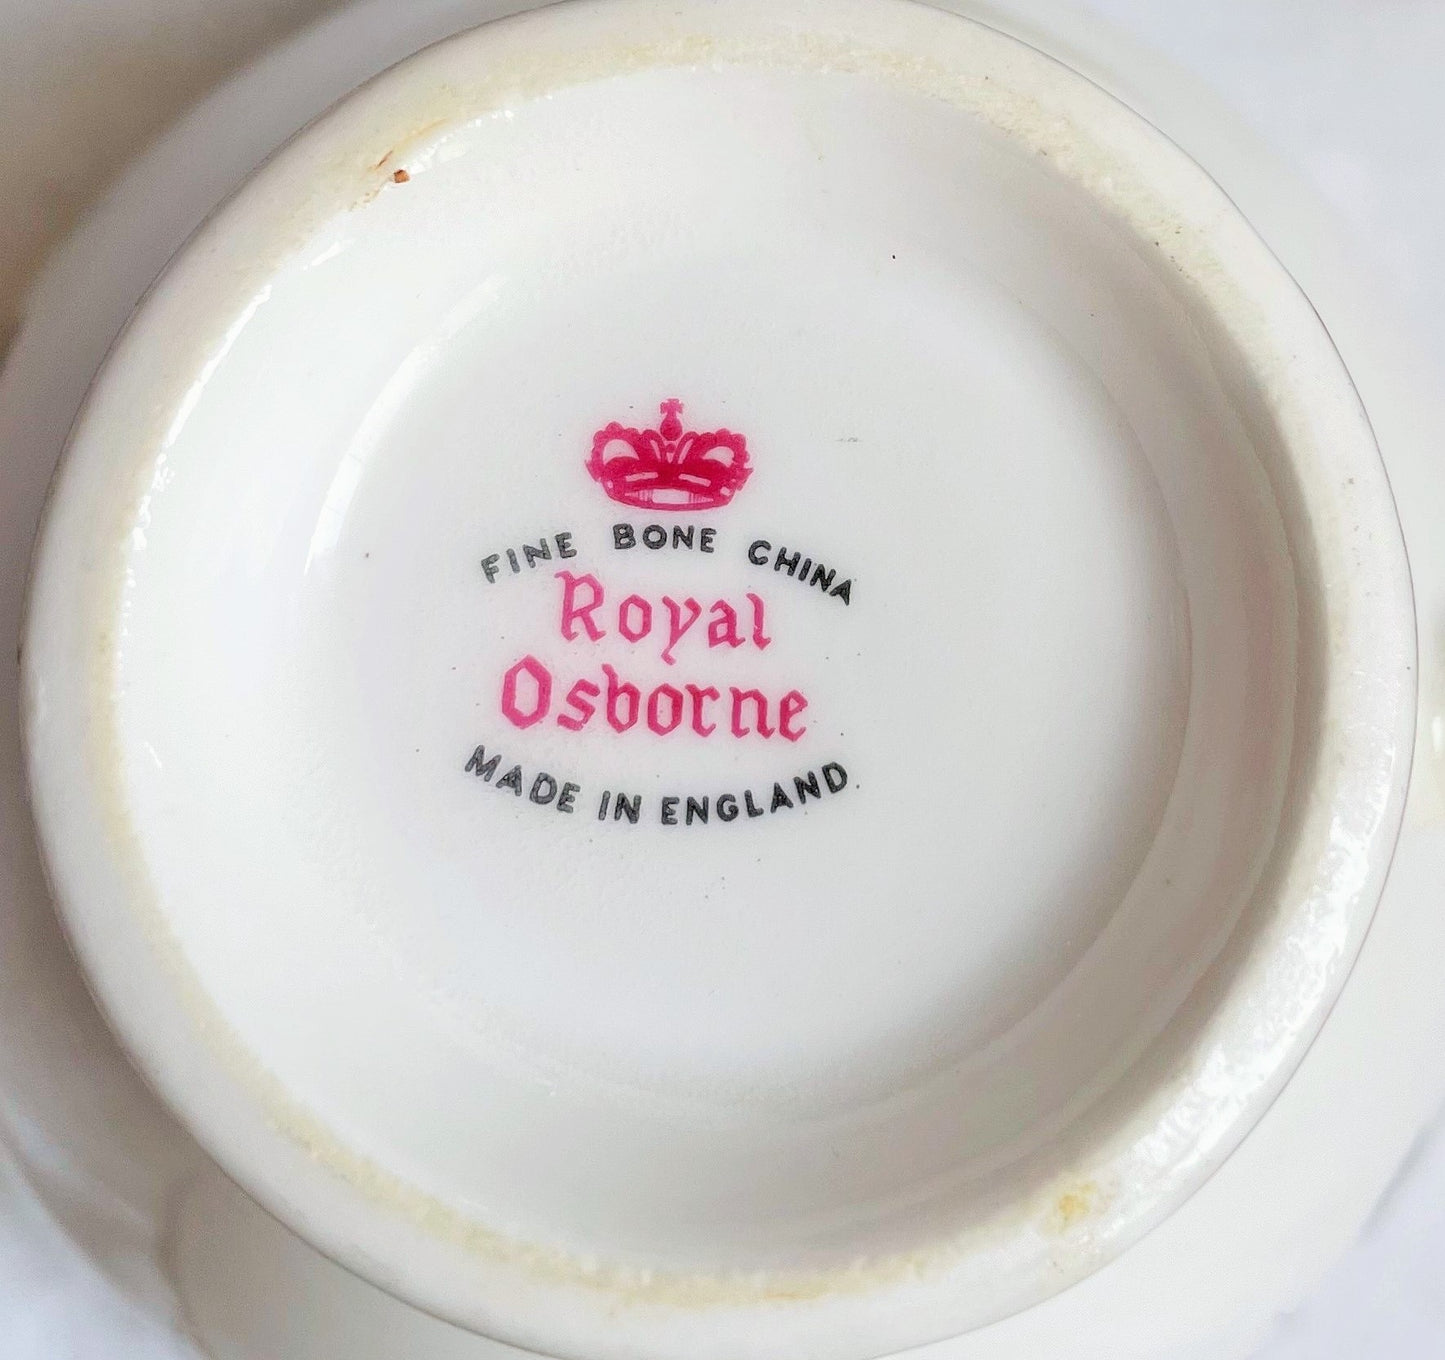 Royal Osborn Pink Roses Teacup, Saucer and Tea Plate